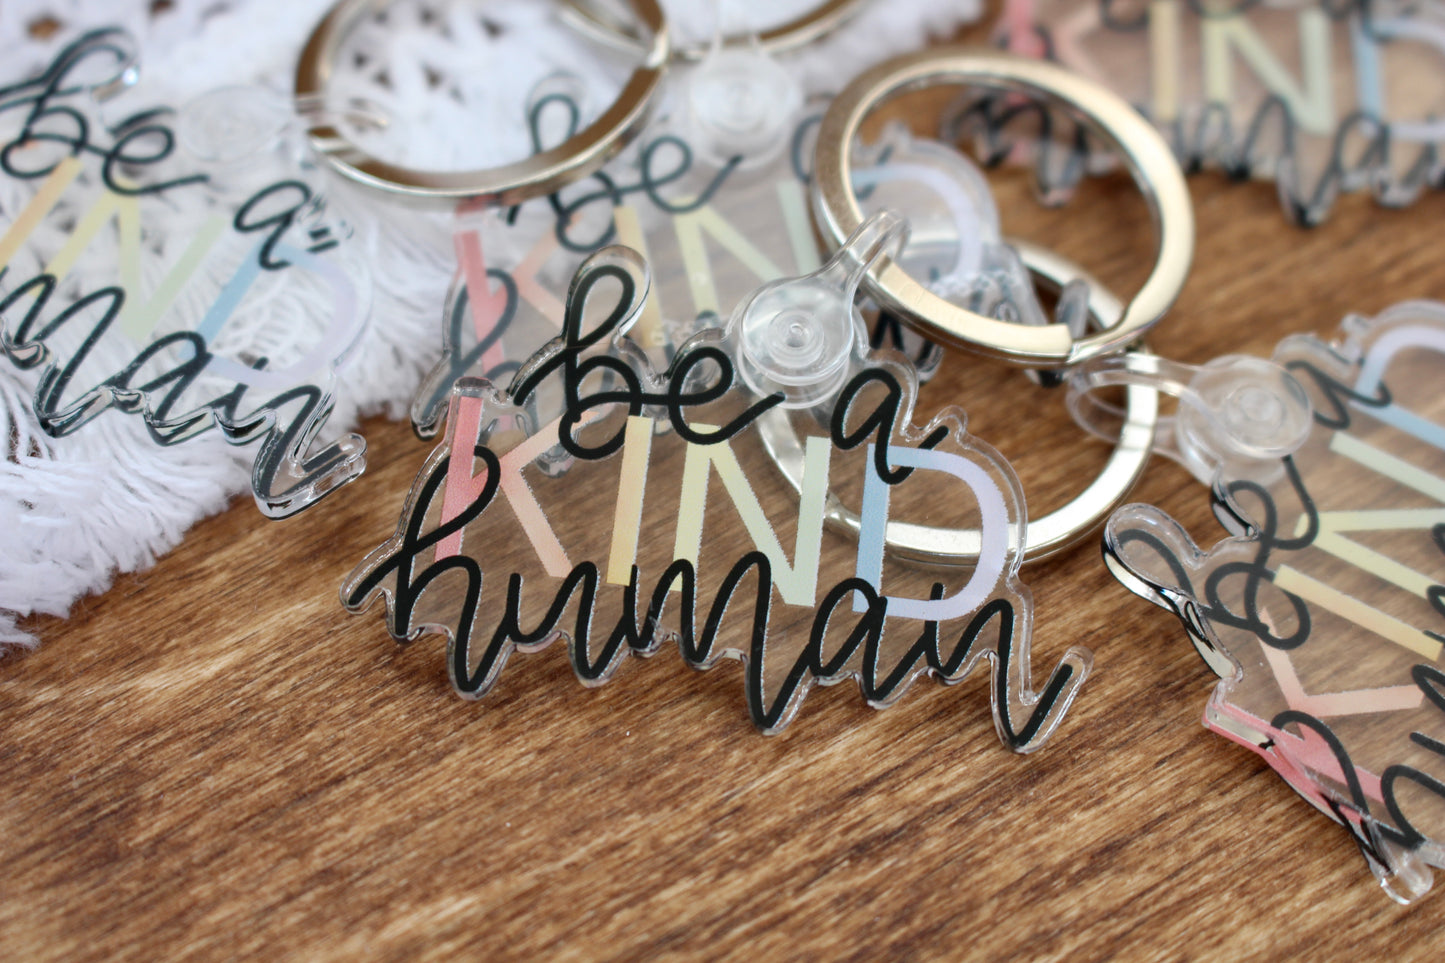 Be a Kind Human Keychain